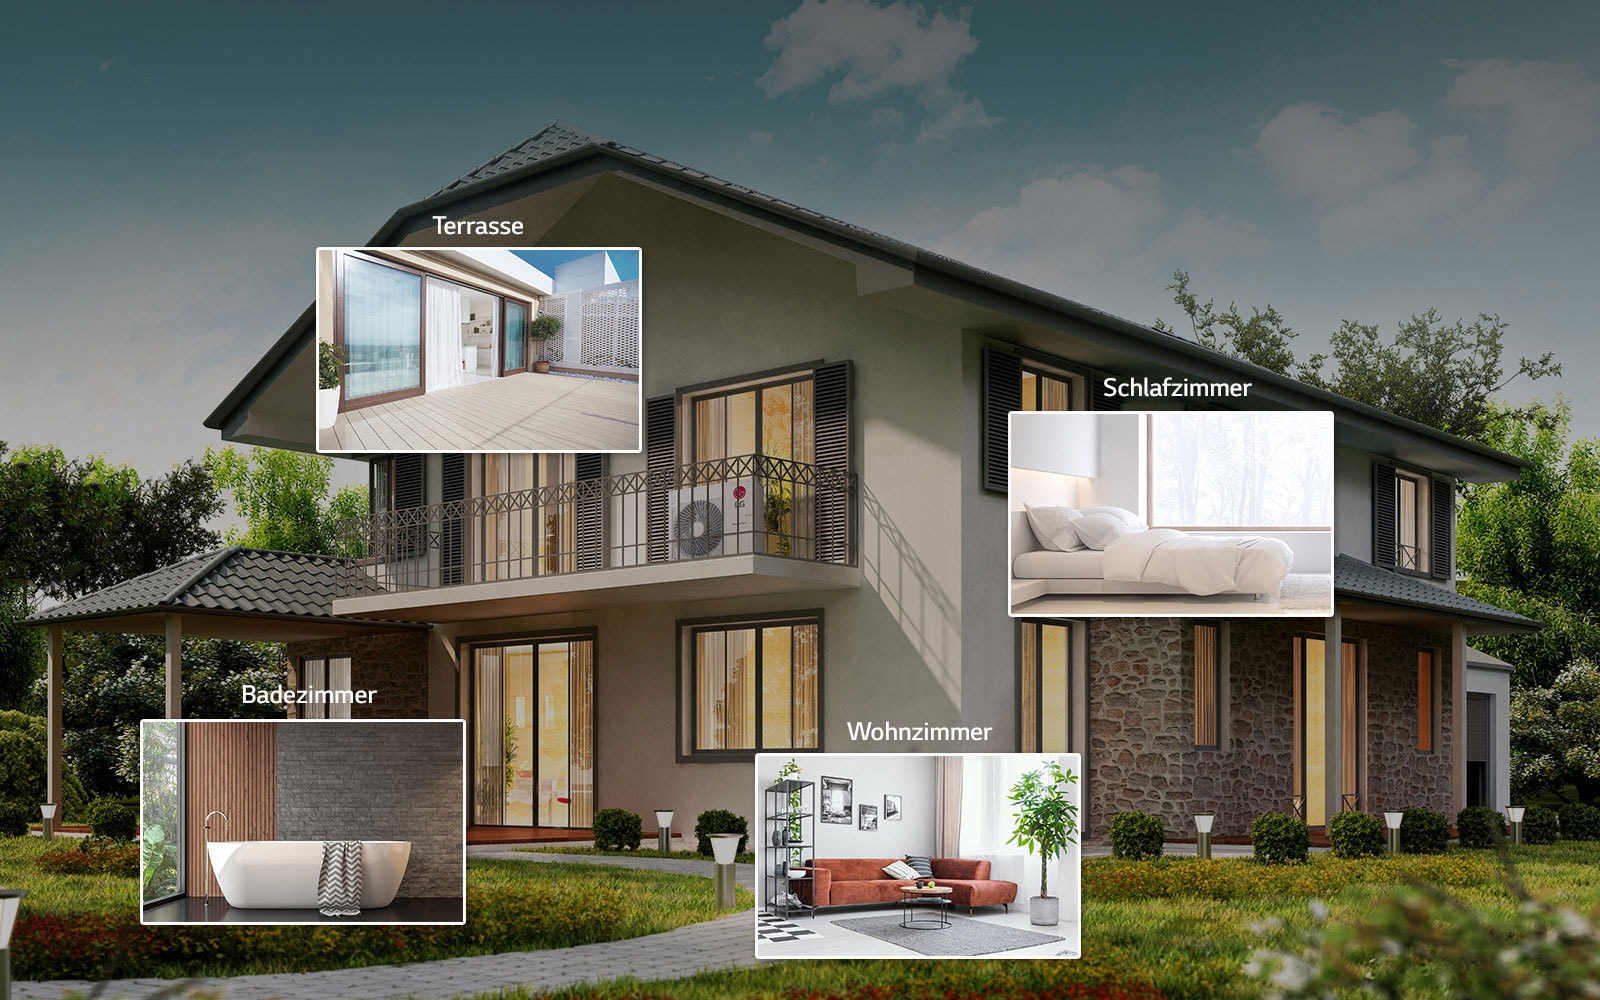 Ein Bild eines Hauses mit vier Thumbnails von Wohnzimmer, Badezimmer, Schlafzimmer und Terrasse.